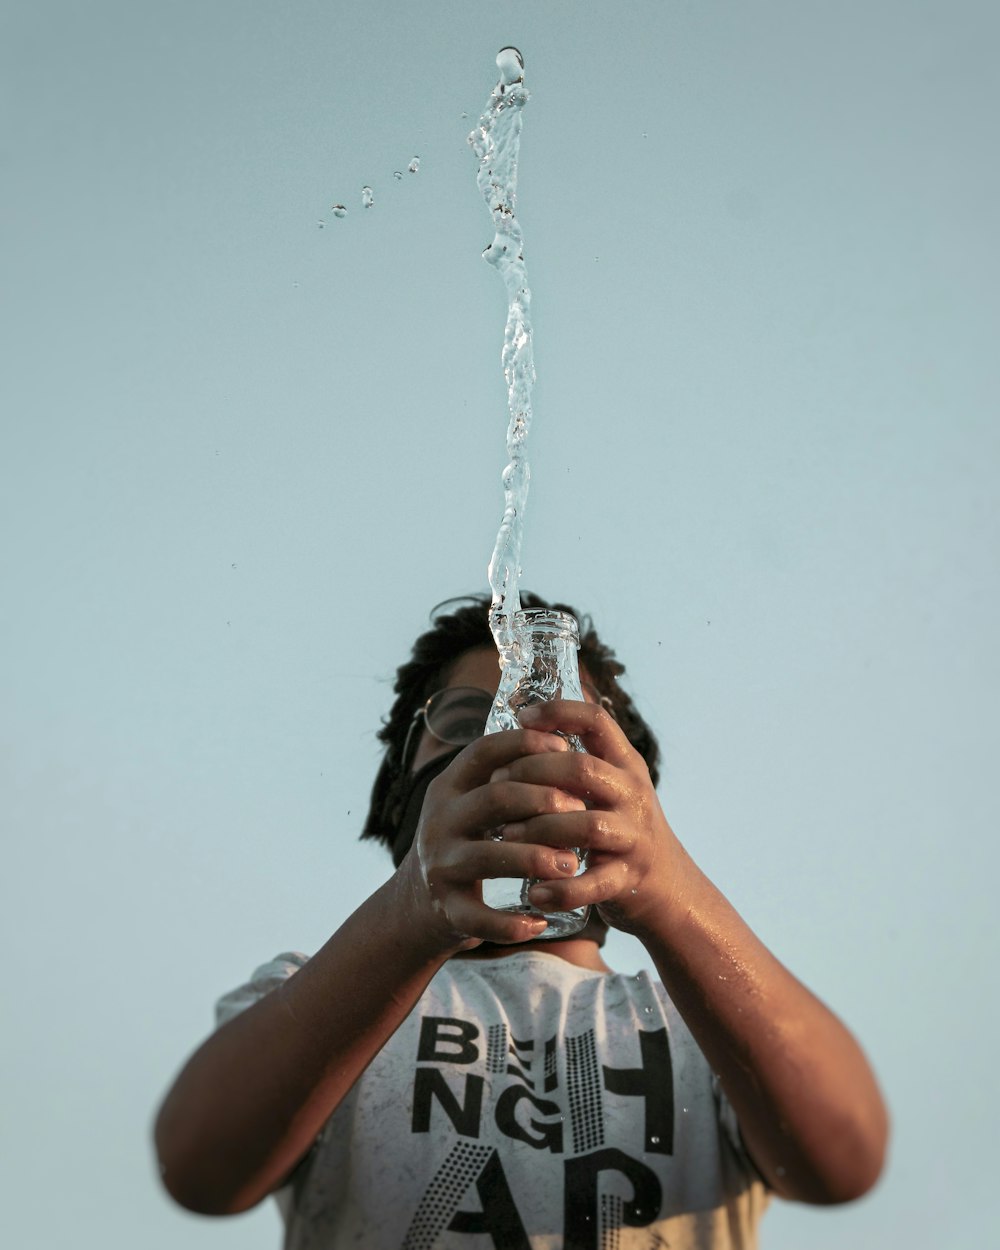 Mann in schwarz-weißem Rundhals-T-Shirt mit Wasserfontäne